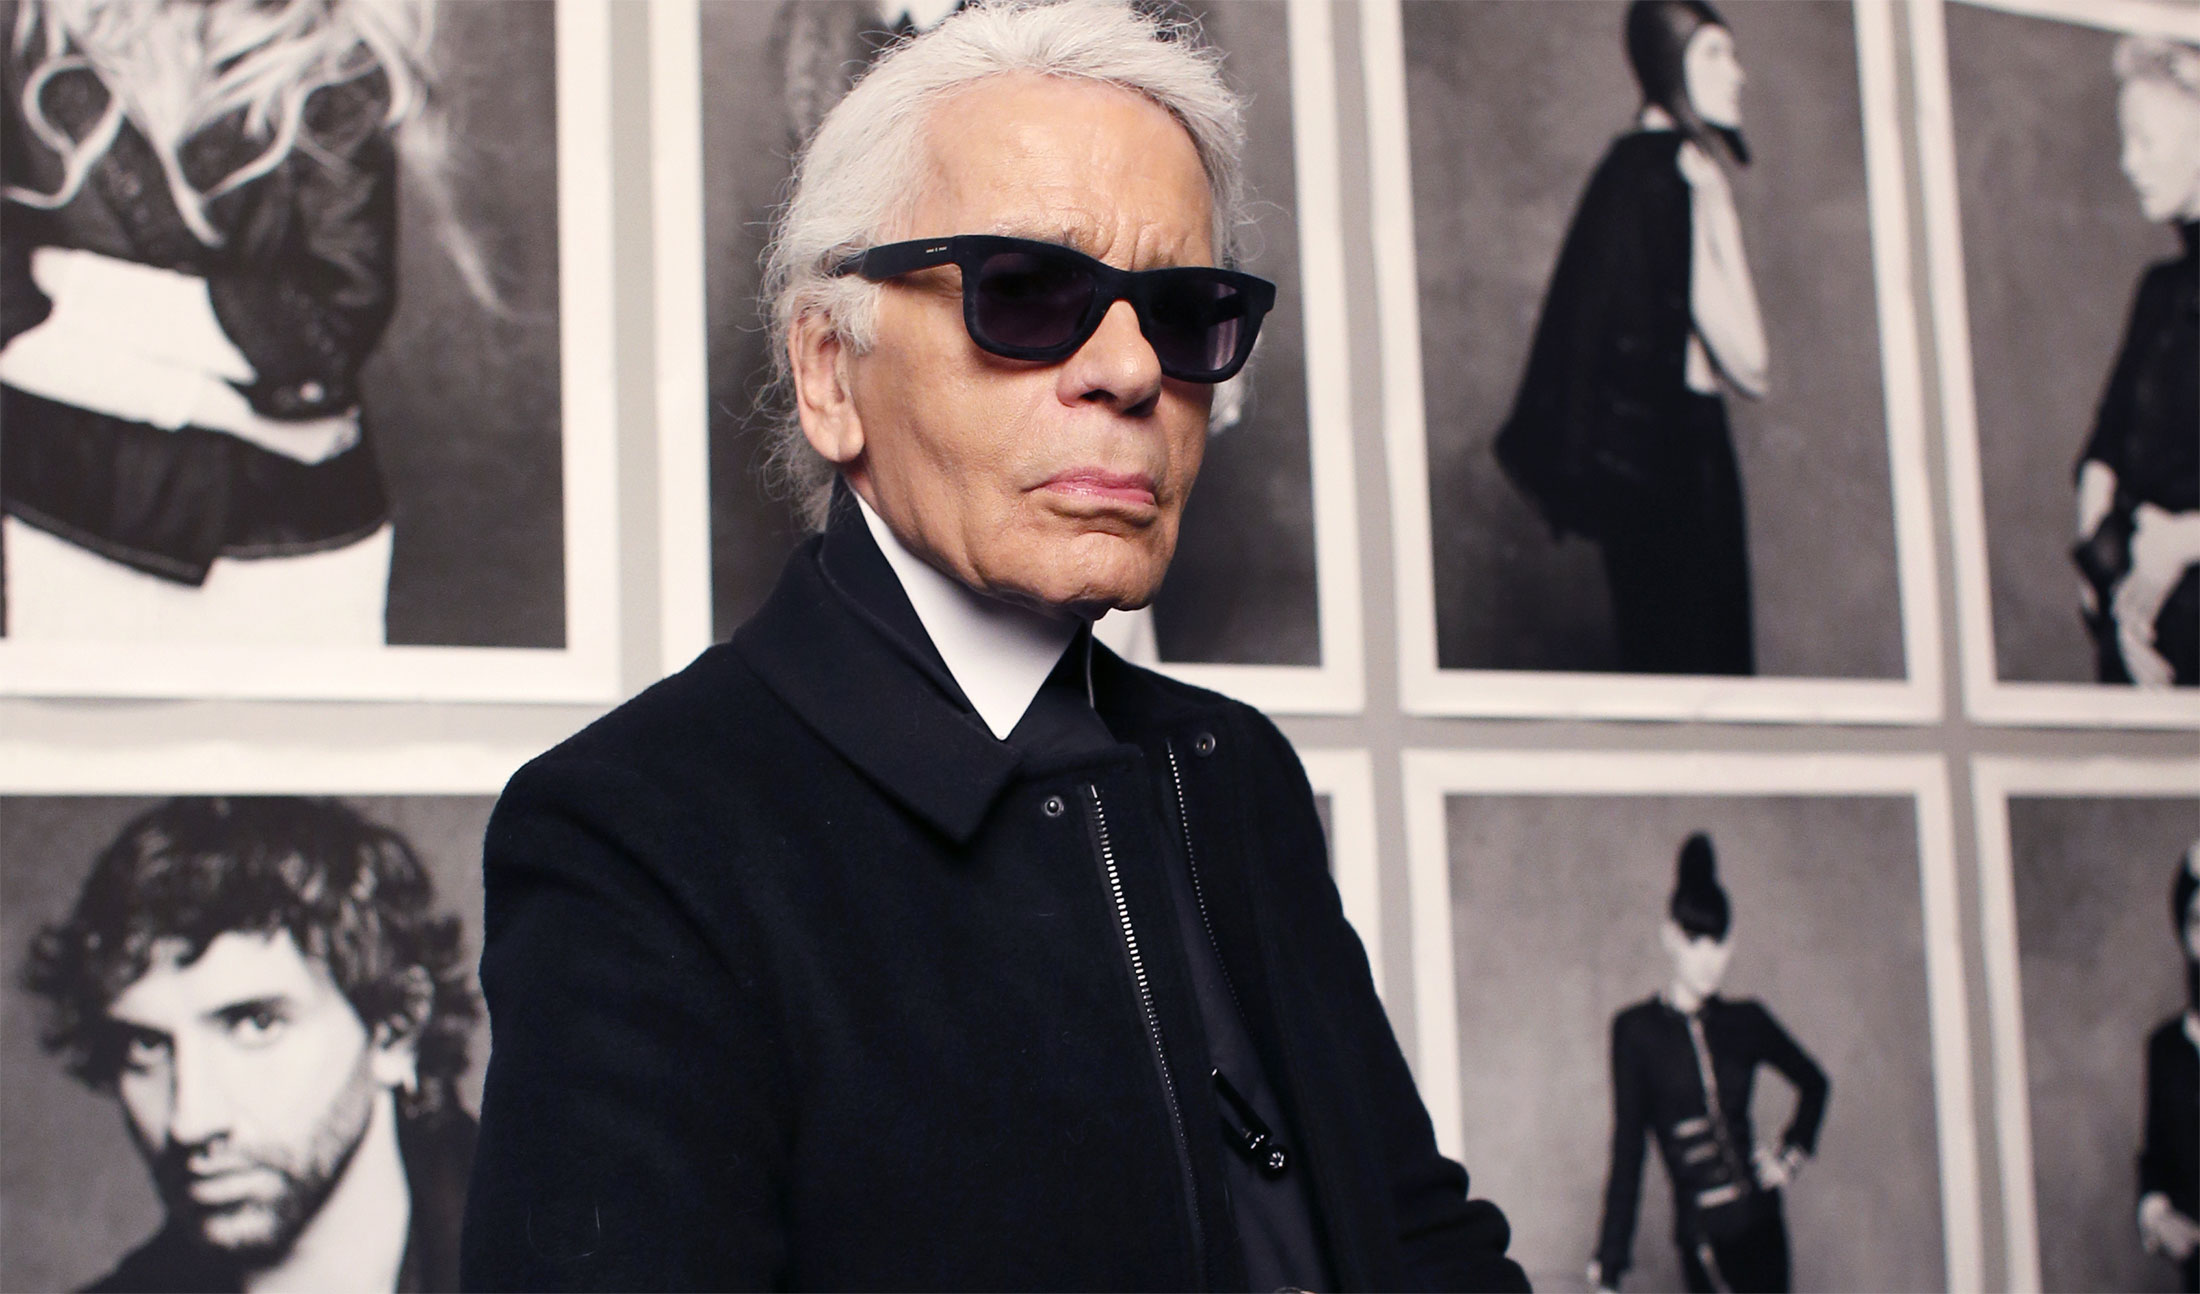 Wystawa zdjęć Karla Lagerfelda na Pitti Uomo